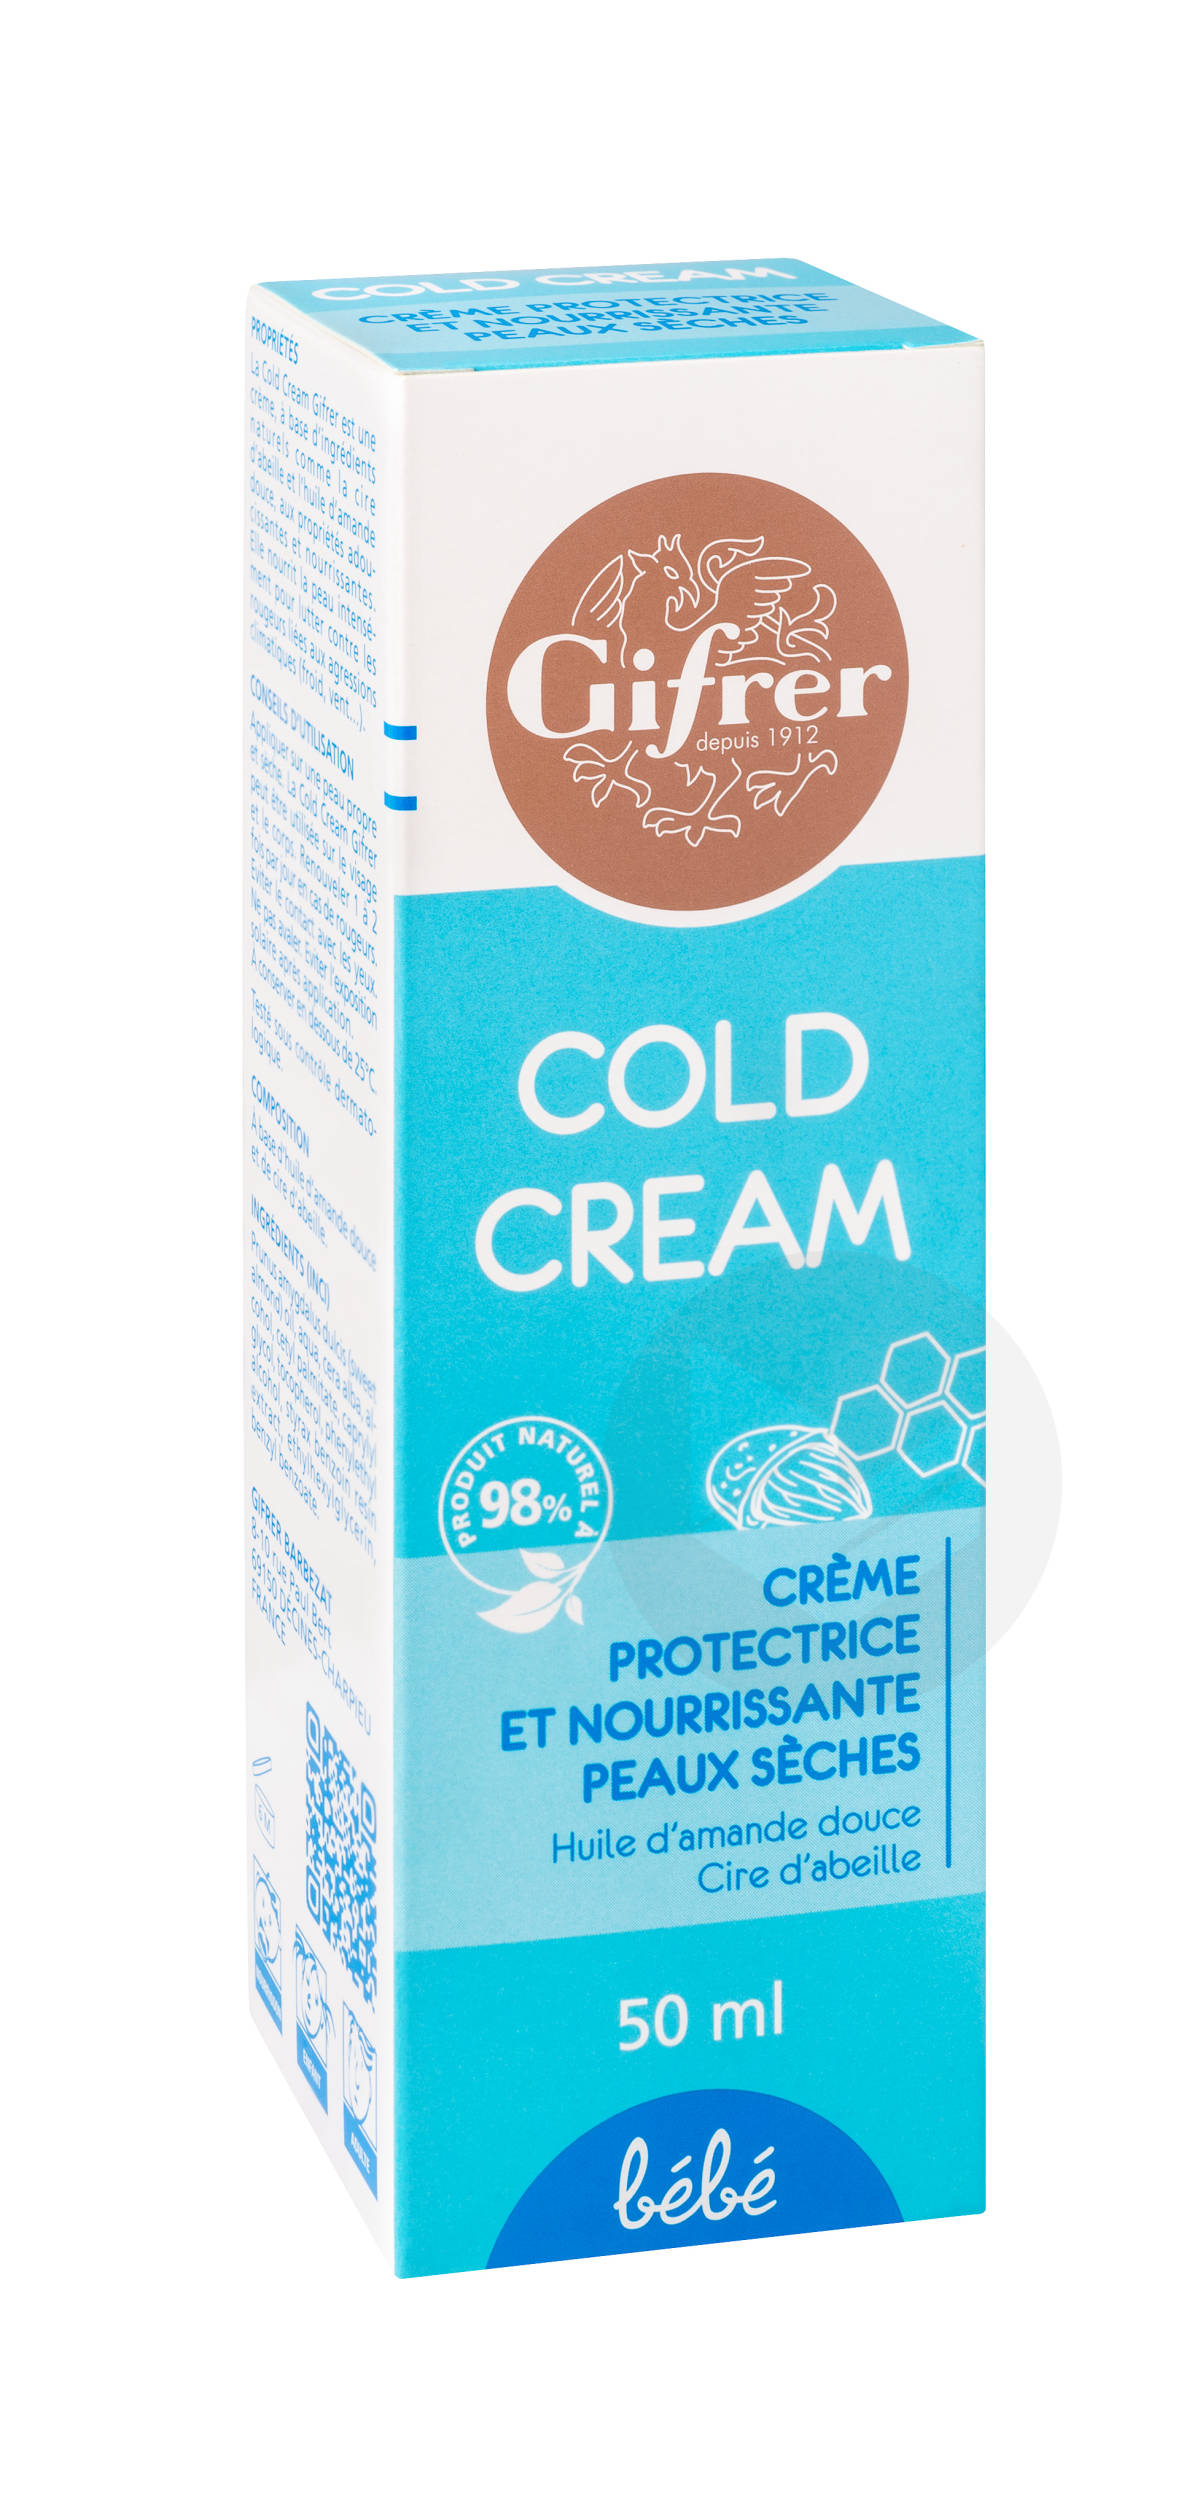 Cold Cream Gifrer 50ml